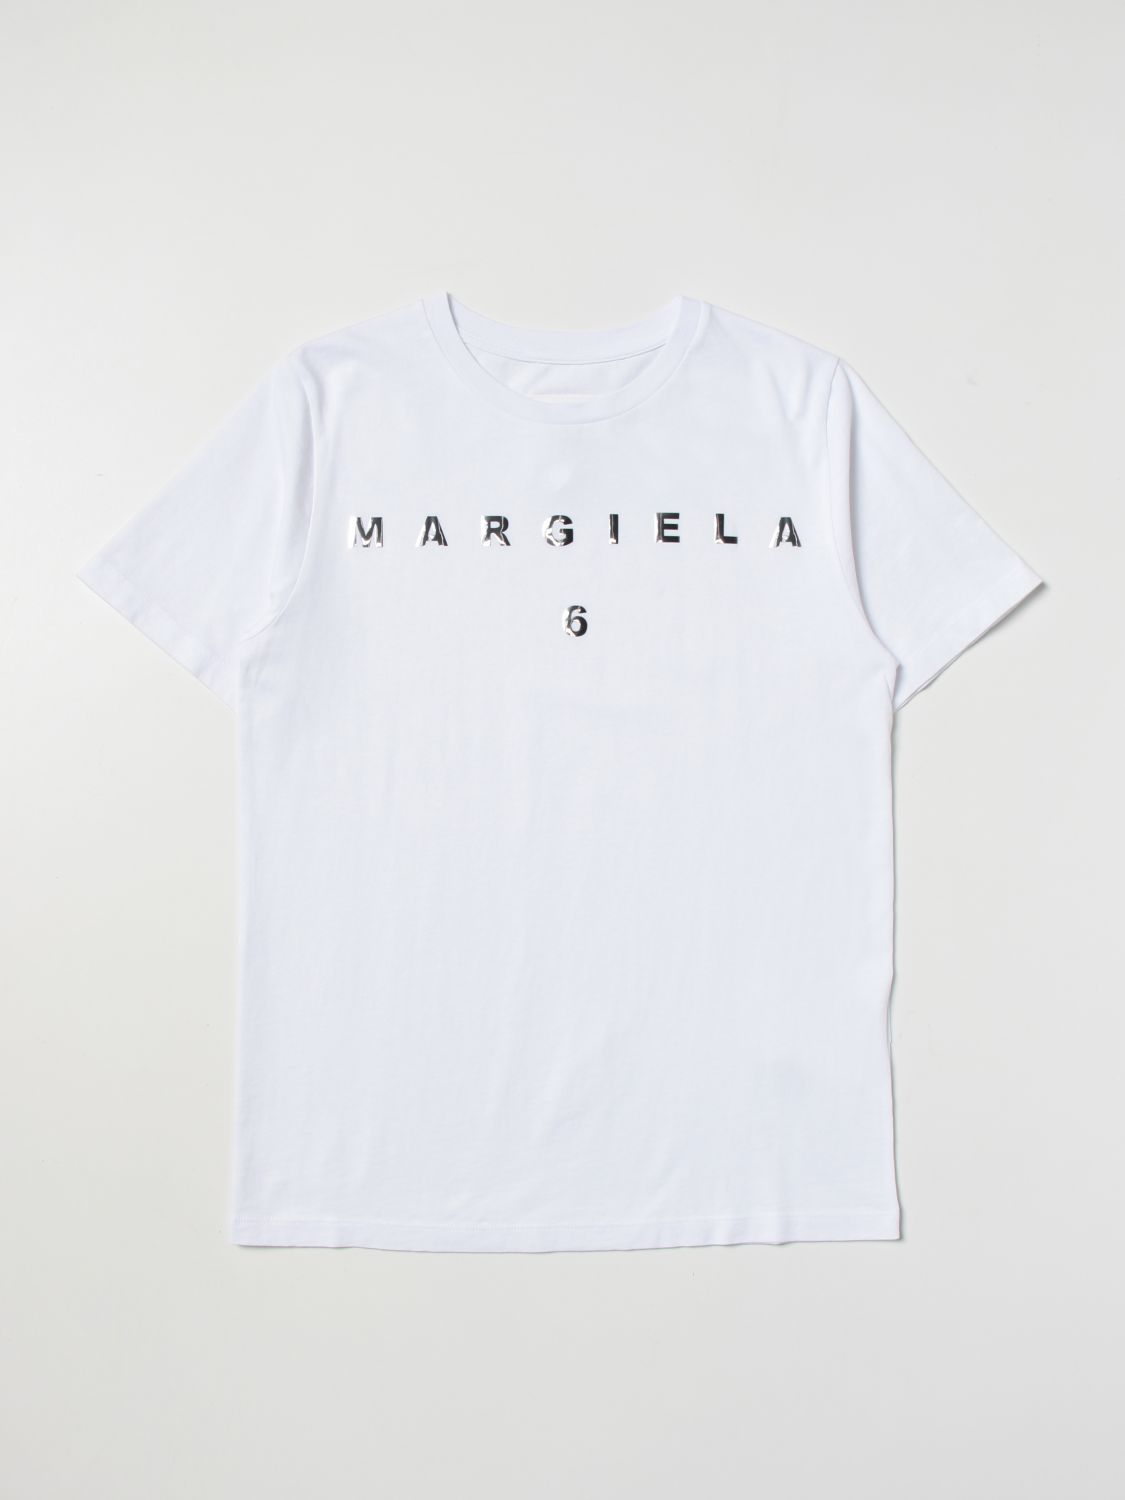 Mm6 Maison Margiela t-shirt for girls